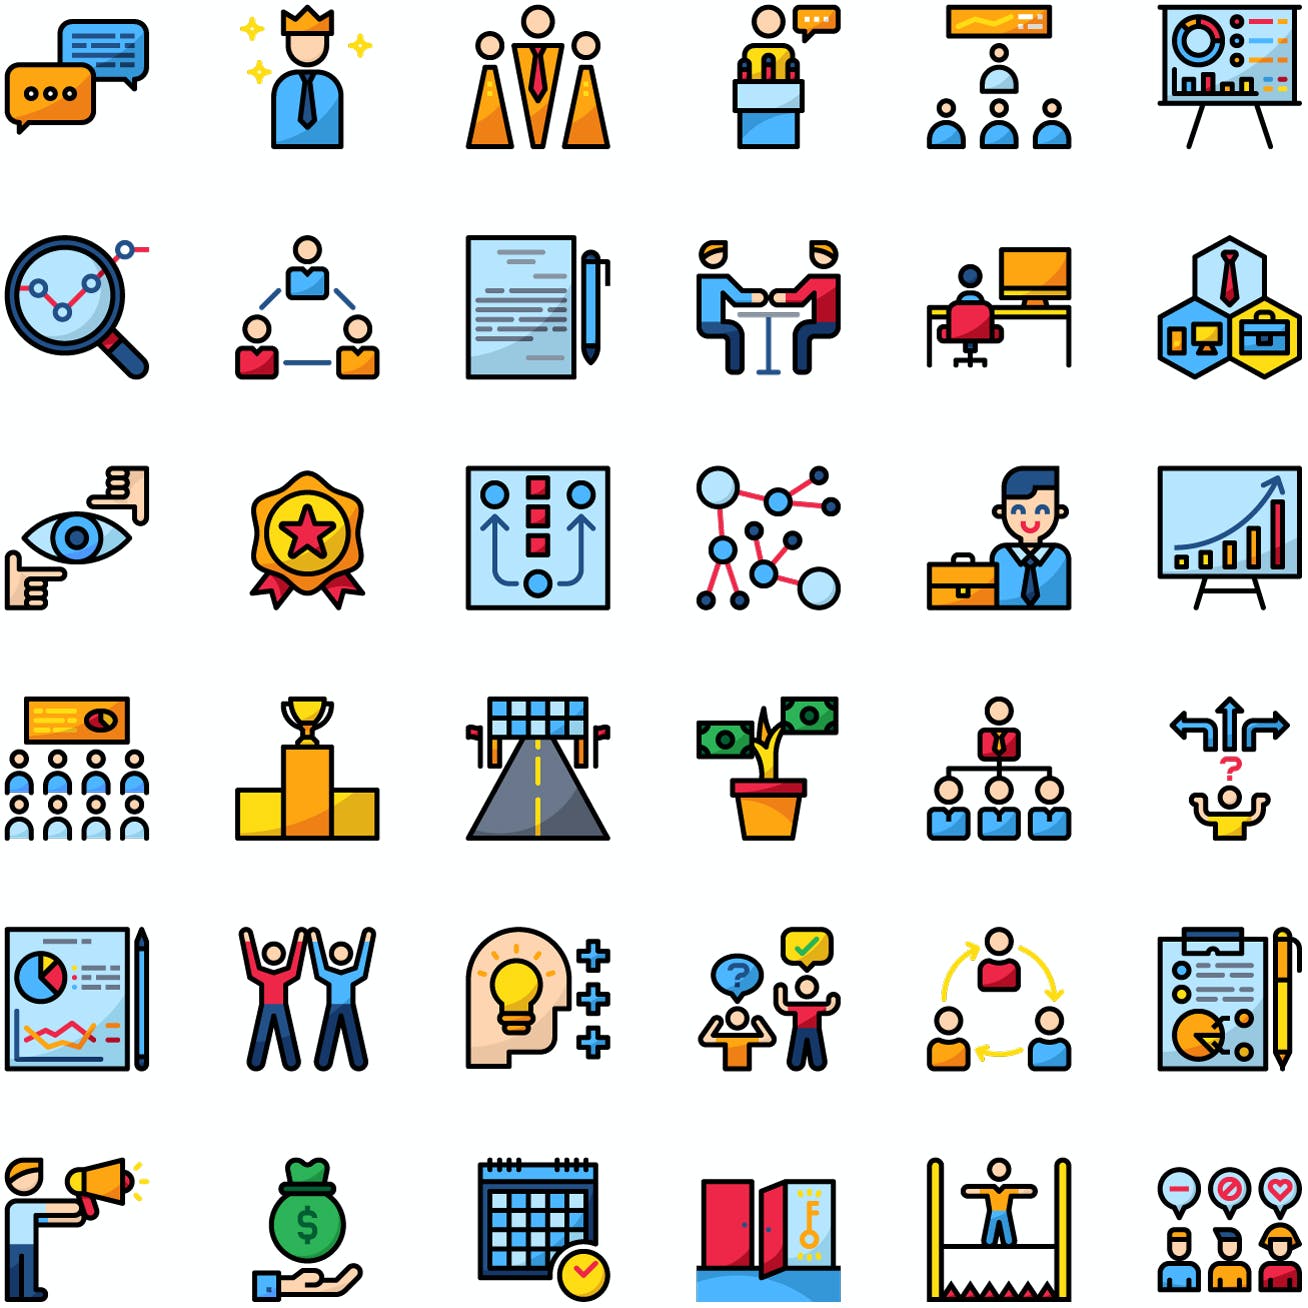 商业发展业务图标集 Business Icon Pack 图标素材 第3张